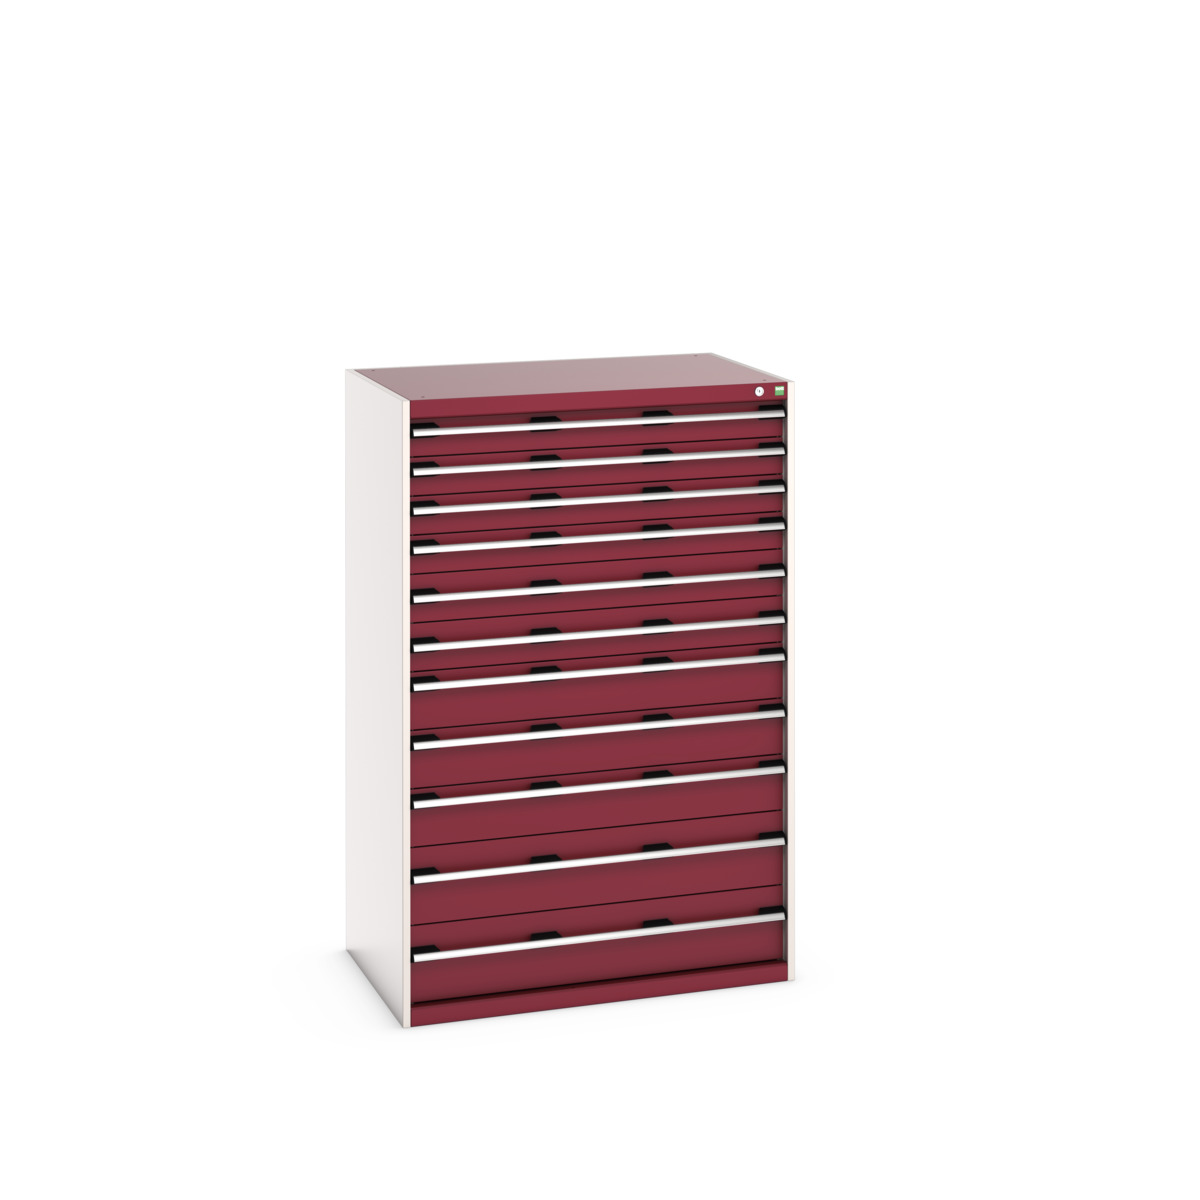 40029037.24V - cubio drawer cabinet